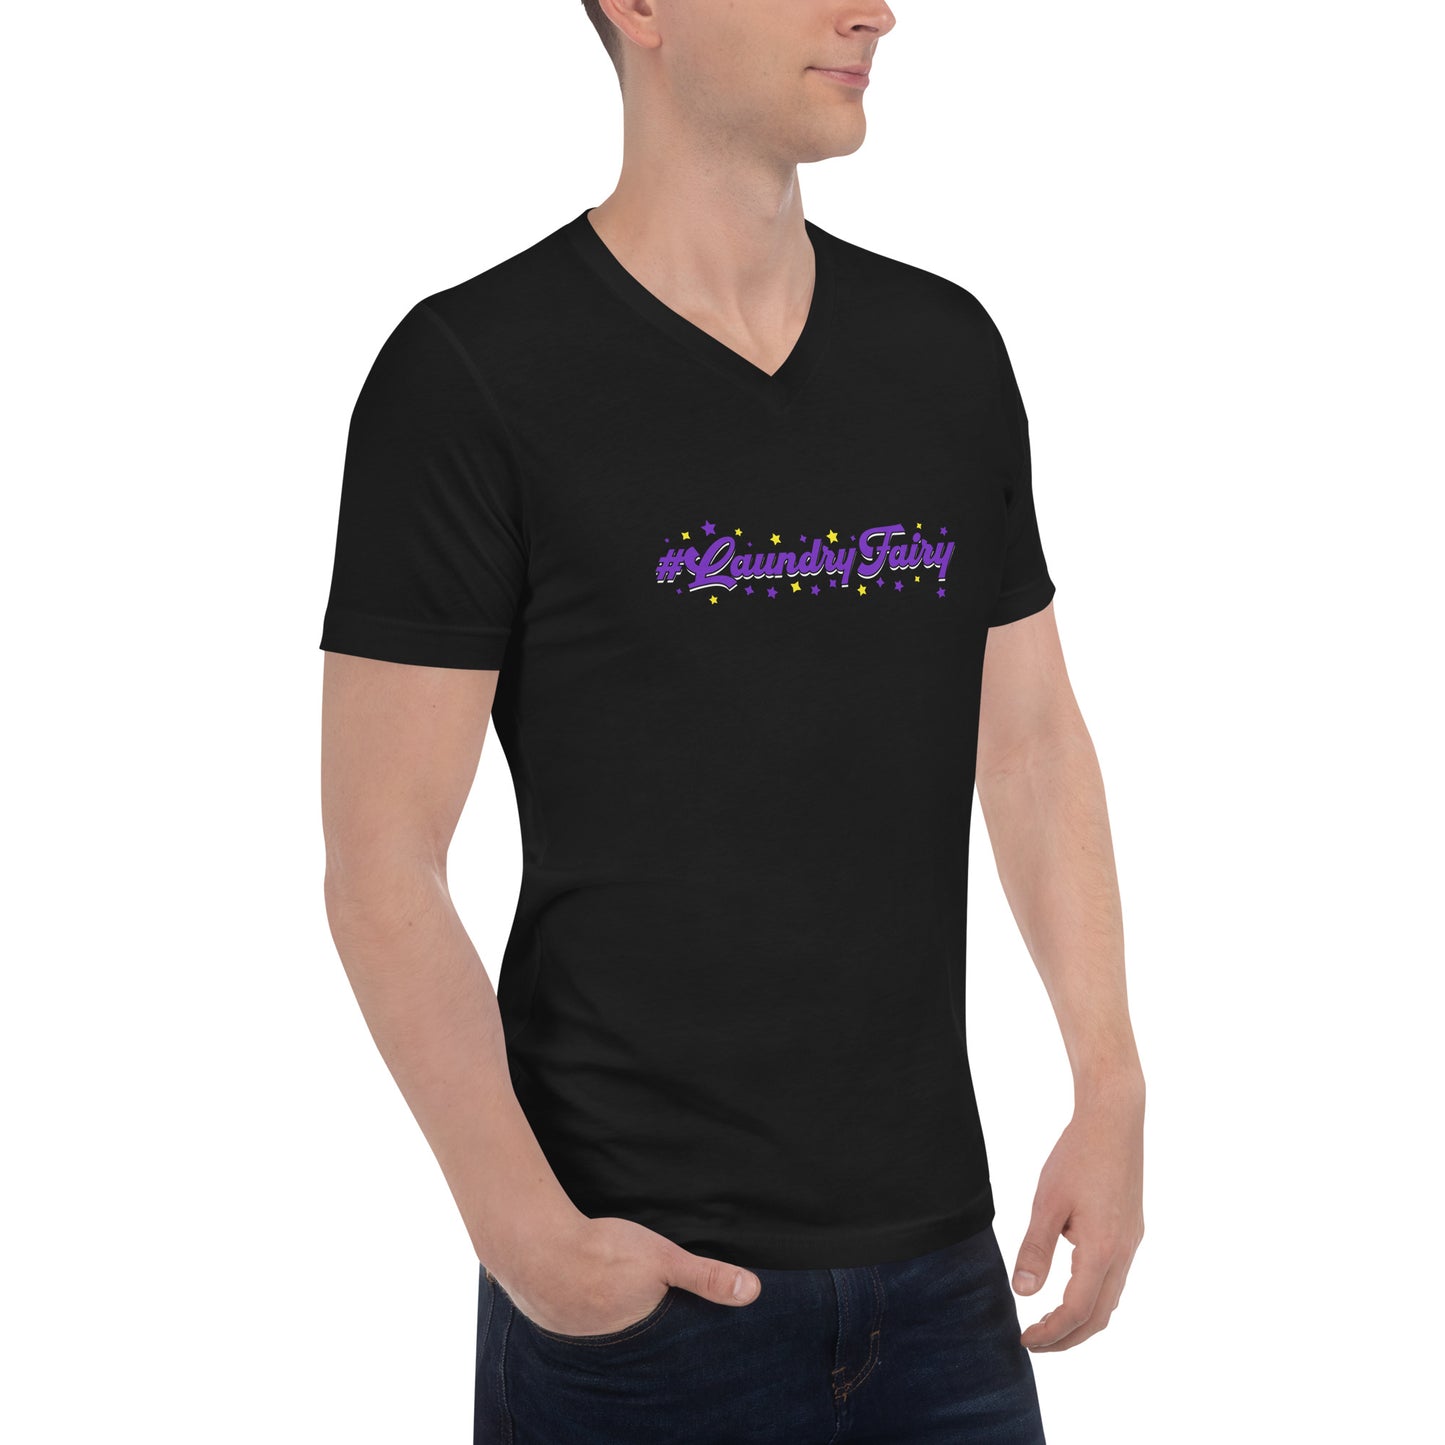 #Laundry Fairy Unisex Short Sleeve V-Neck T-Shirt